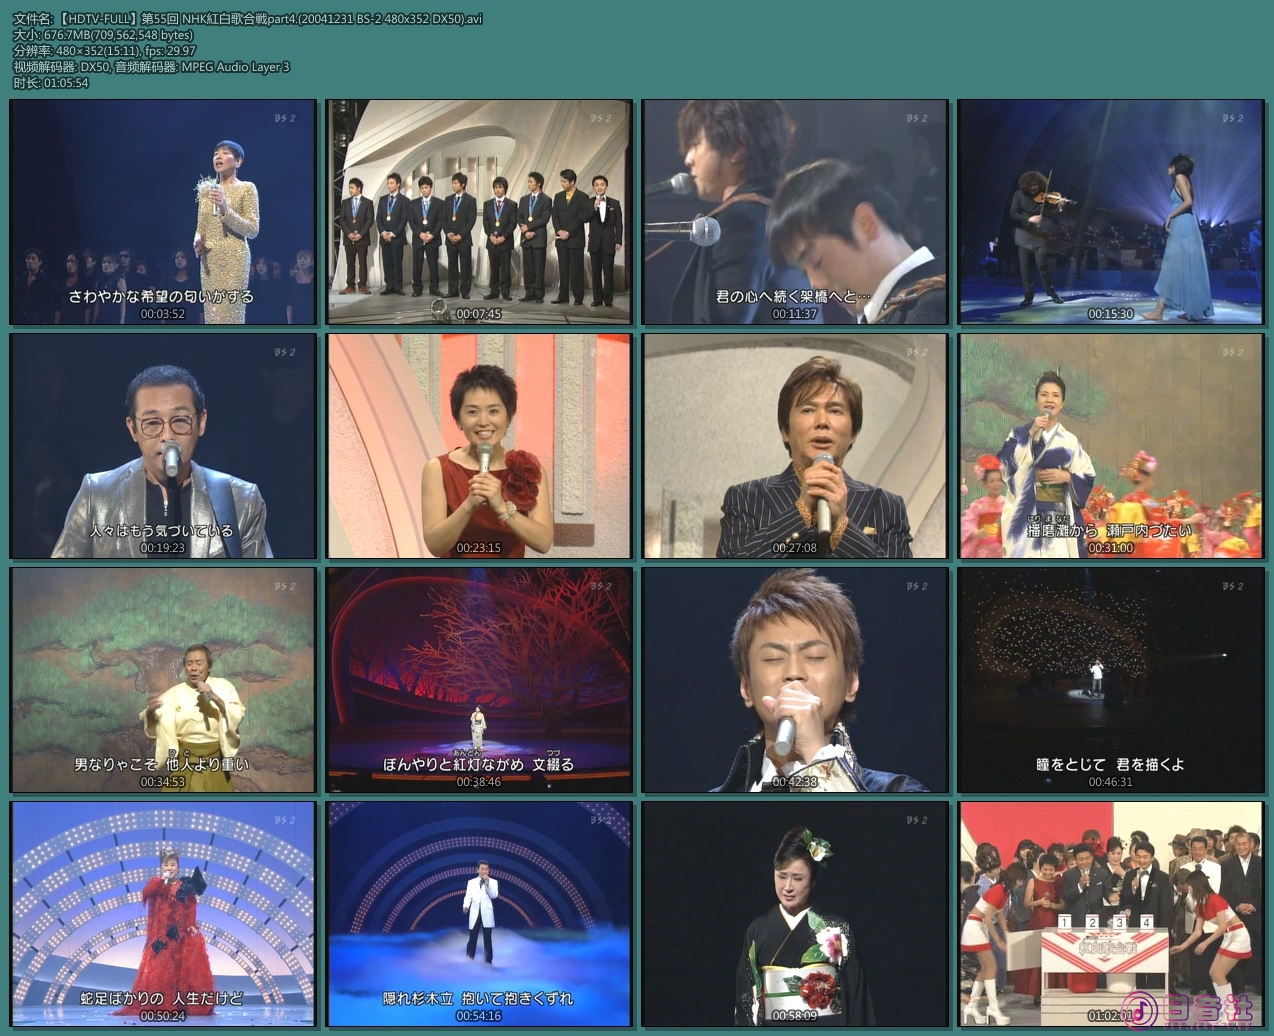 【HDTV-FULL】第55回 NHK紅白歌合戦part4.(20041231 BS-2 480x352 DX50).avi.jpg